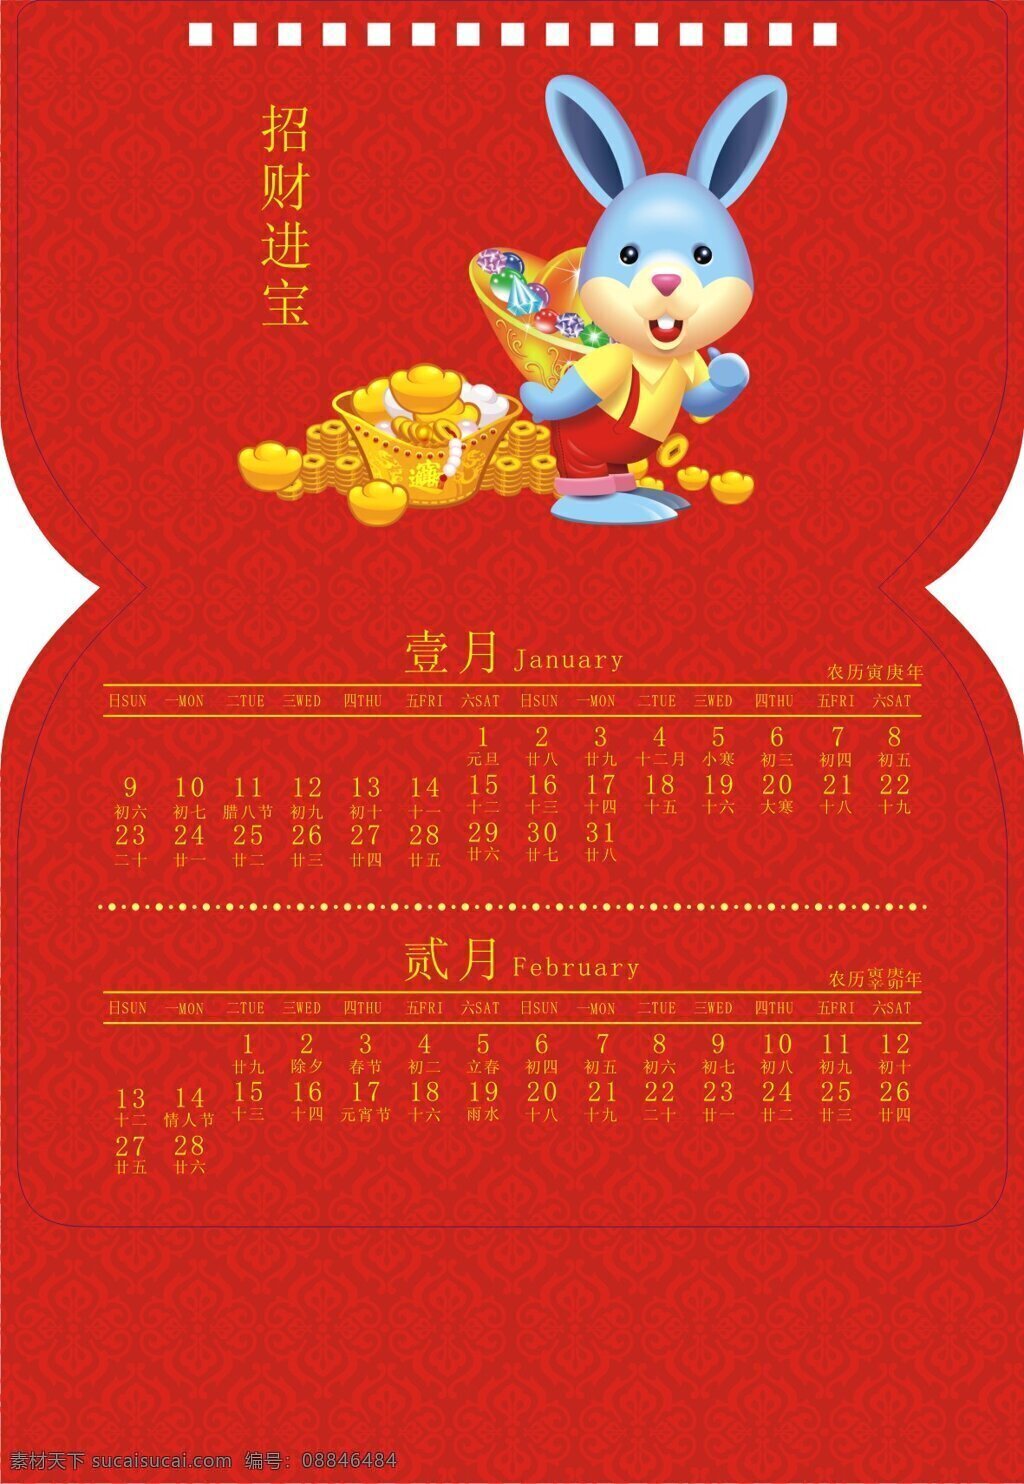 招财进宝 传统 挂历 矢量 封面 年历 日历表 2011兔年 矢量图 其他矢量图